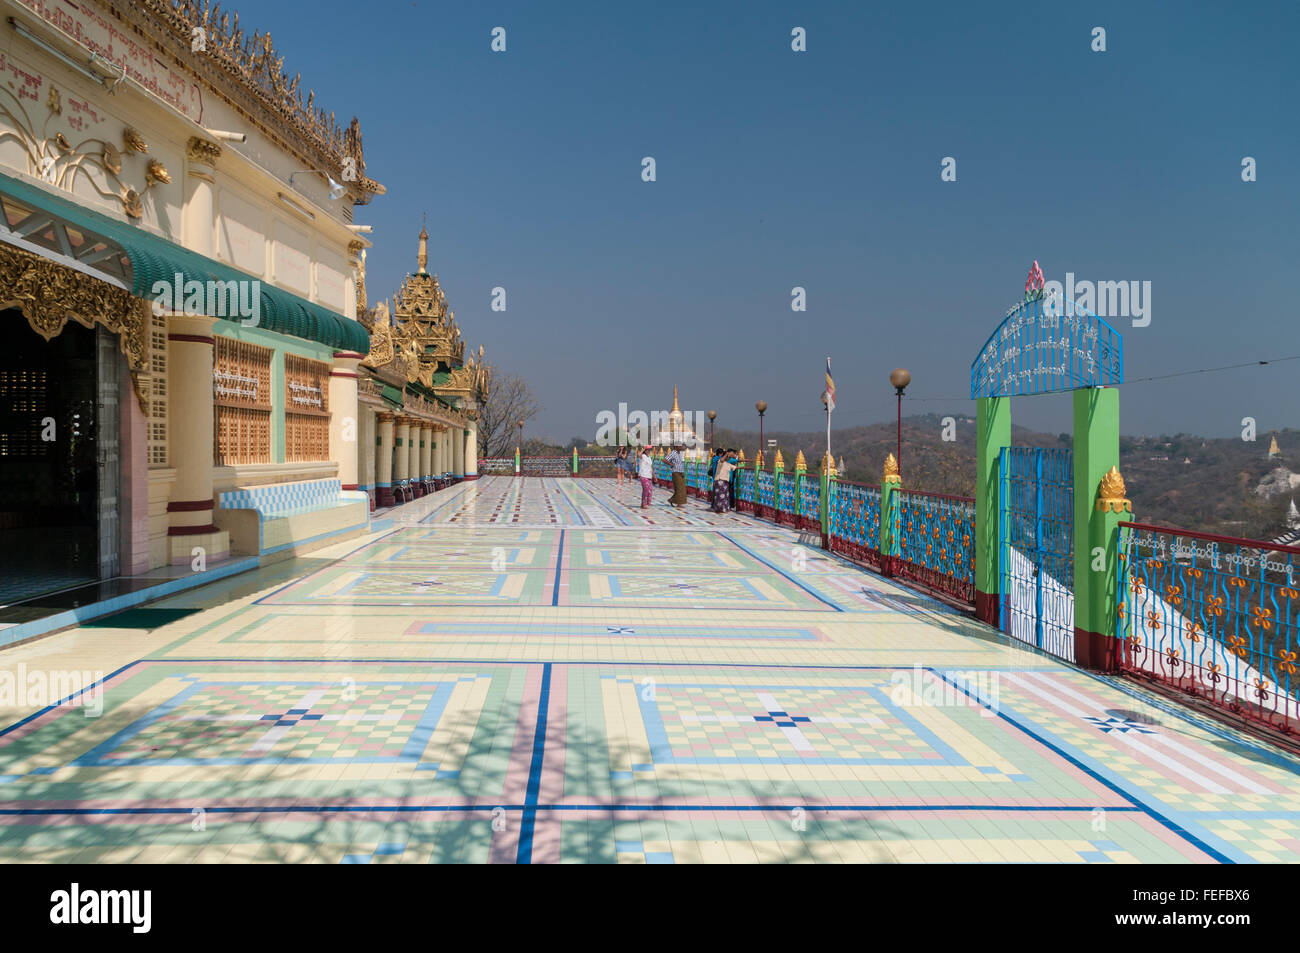 Terrace with colourful floor tiles. Soon Oo Ponya Shin Pagoda, Sagaing, Myanmar. Stock Photo